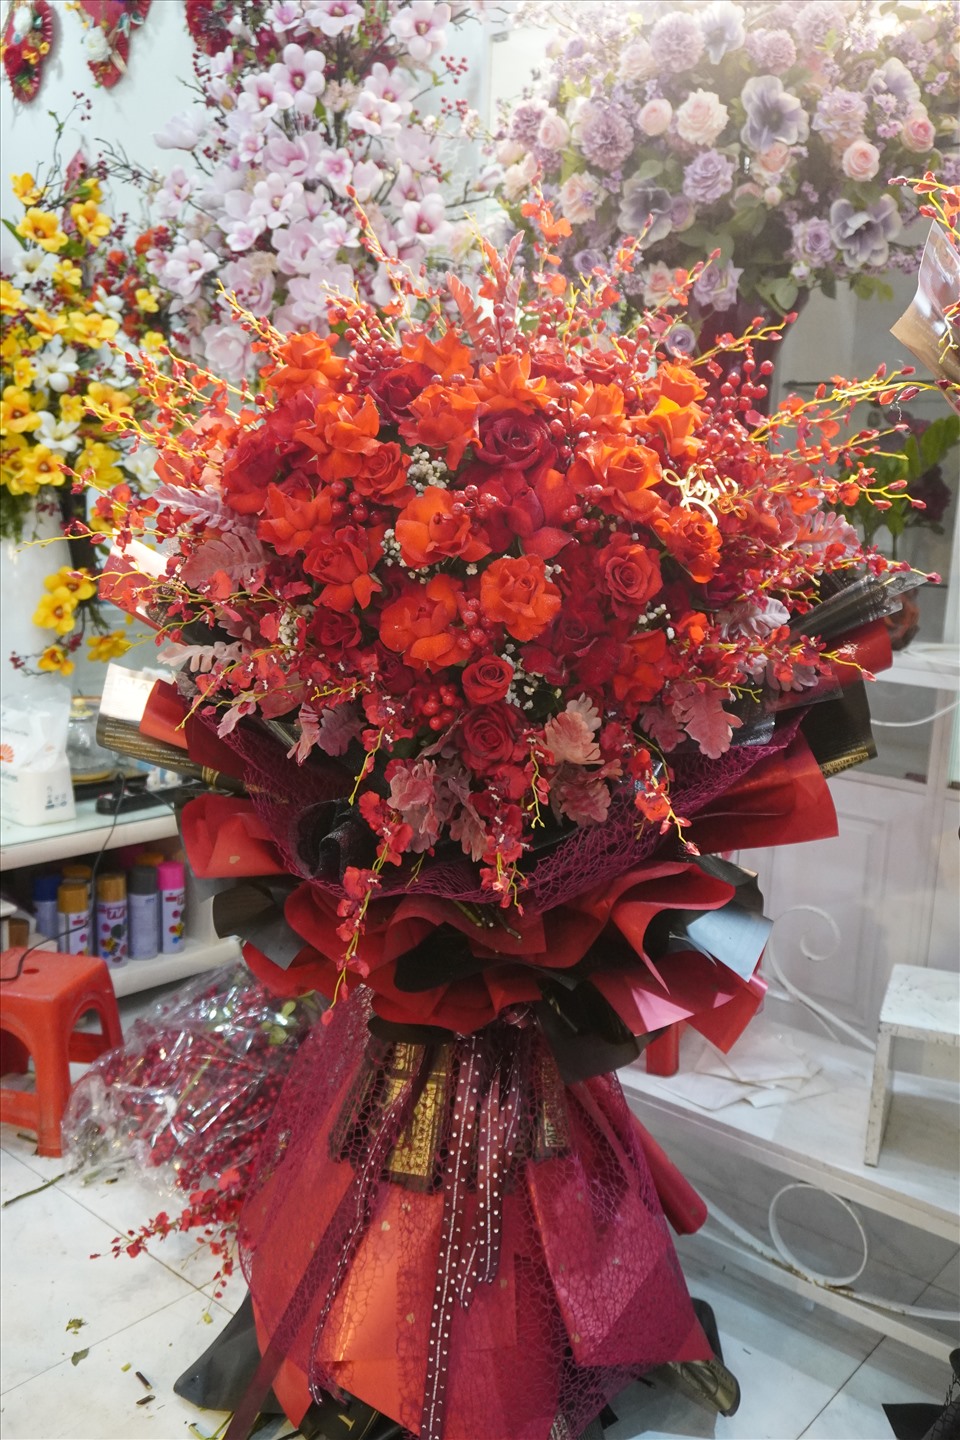 Bó hoa “trái tim” được chủ shop hoa tươi trên đường Triệu Quốc Đạt định giá với giá 3 triệu đồng. Ảnh: Q.D